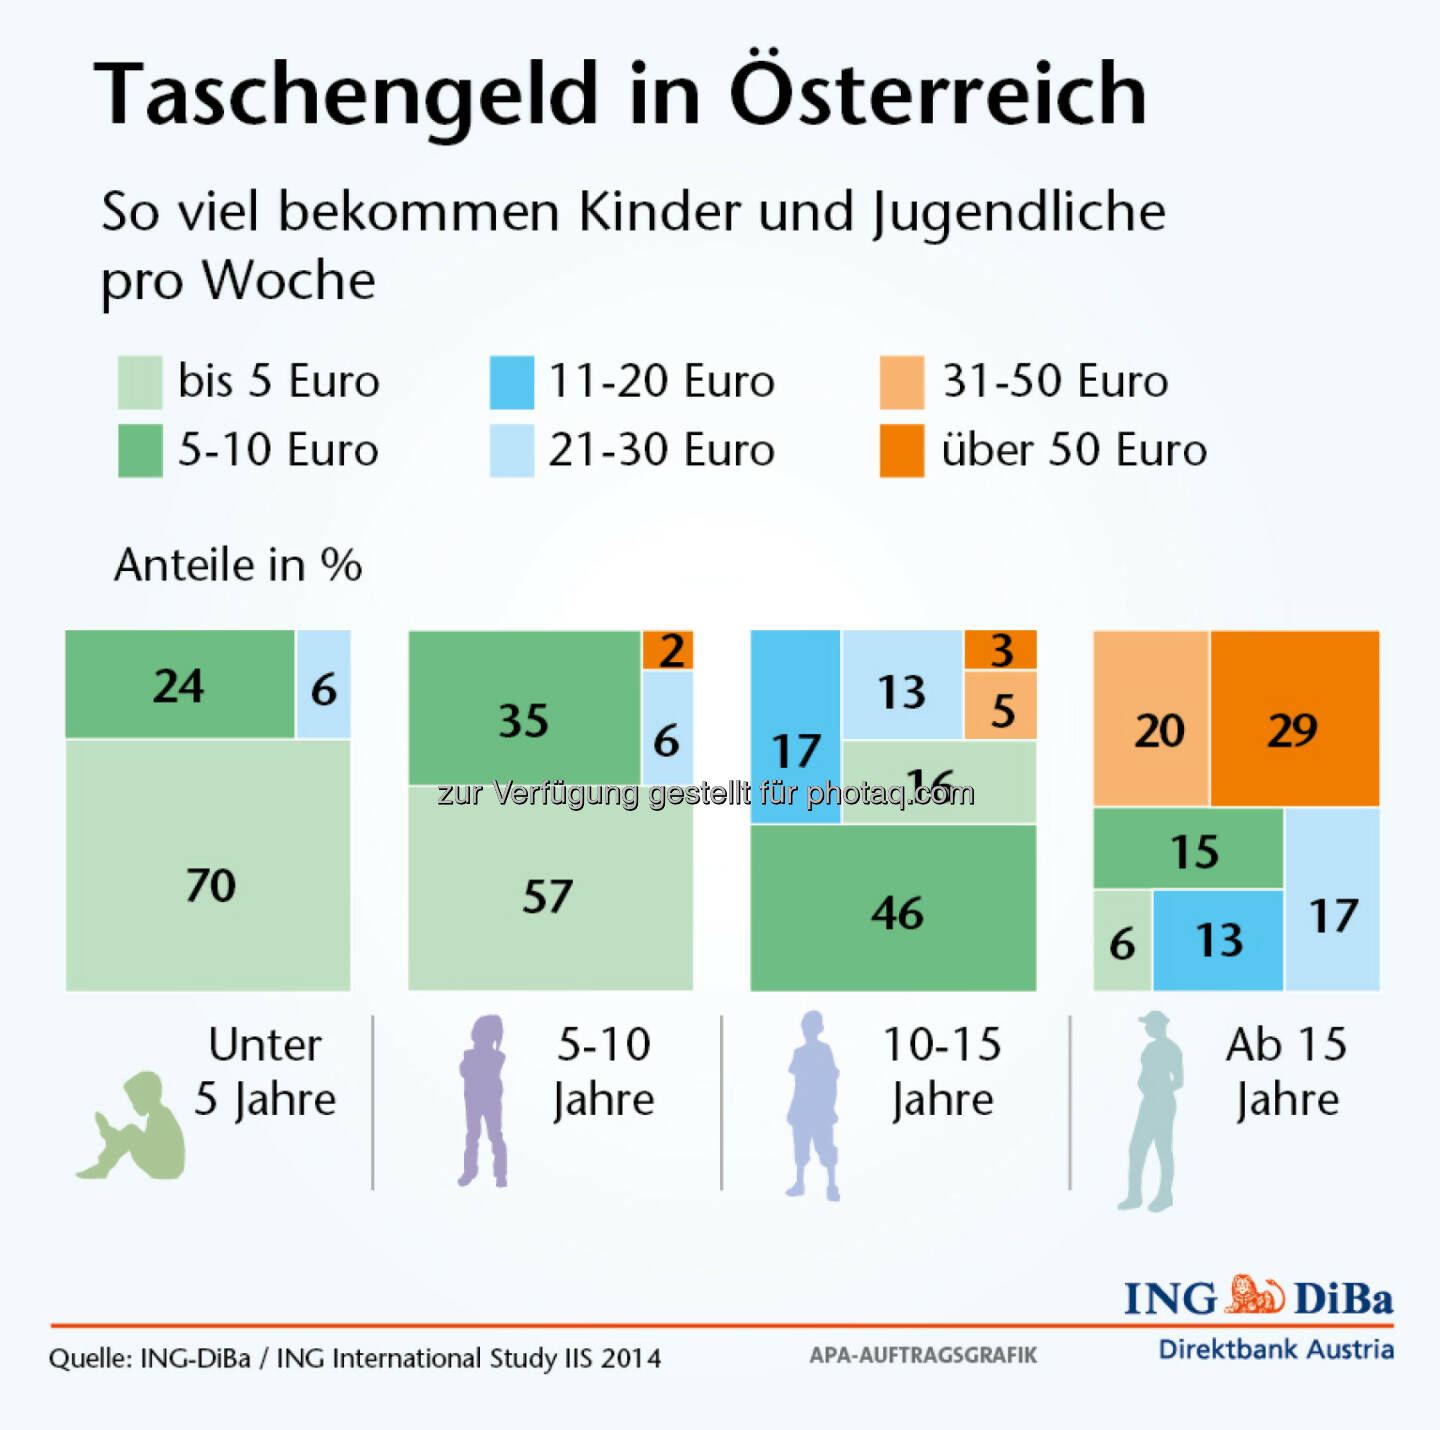 Taschengeld-Report der ING-DiBa - So viel bekommen Kinder und Jugendliche pro Woche in Österreich (Grafik: ING-DiBa)